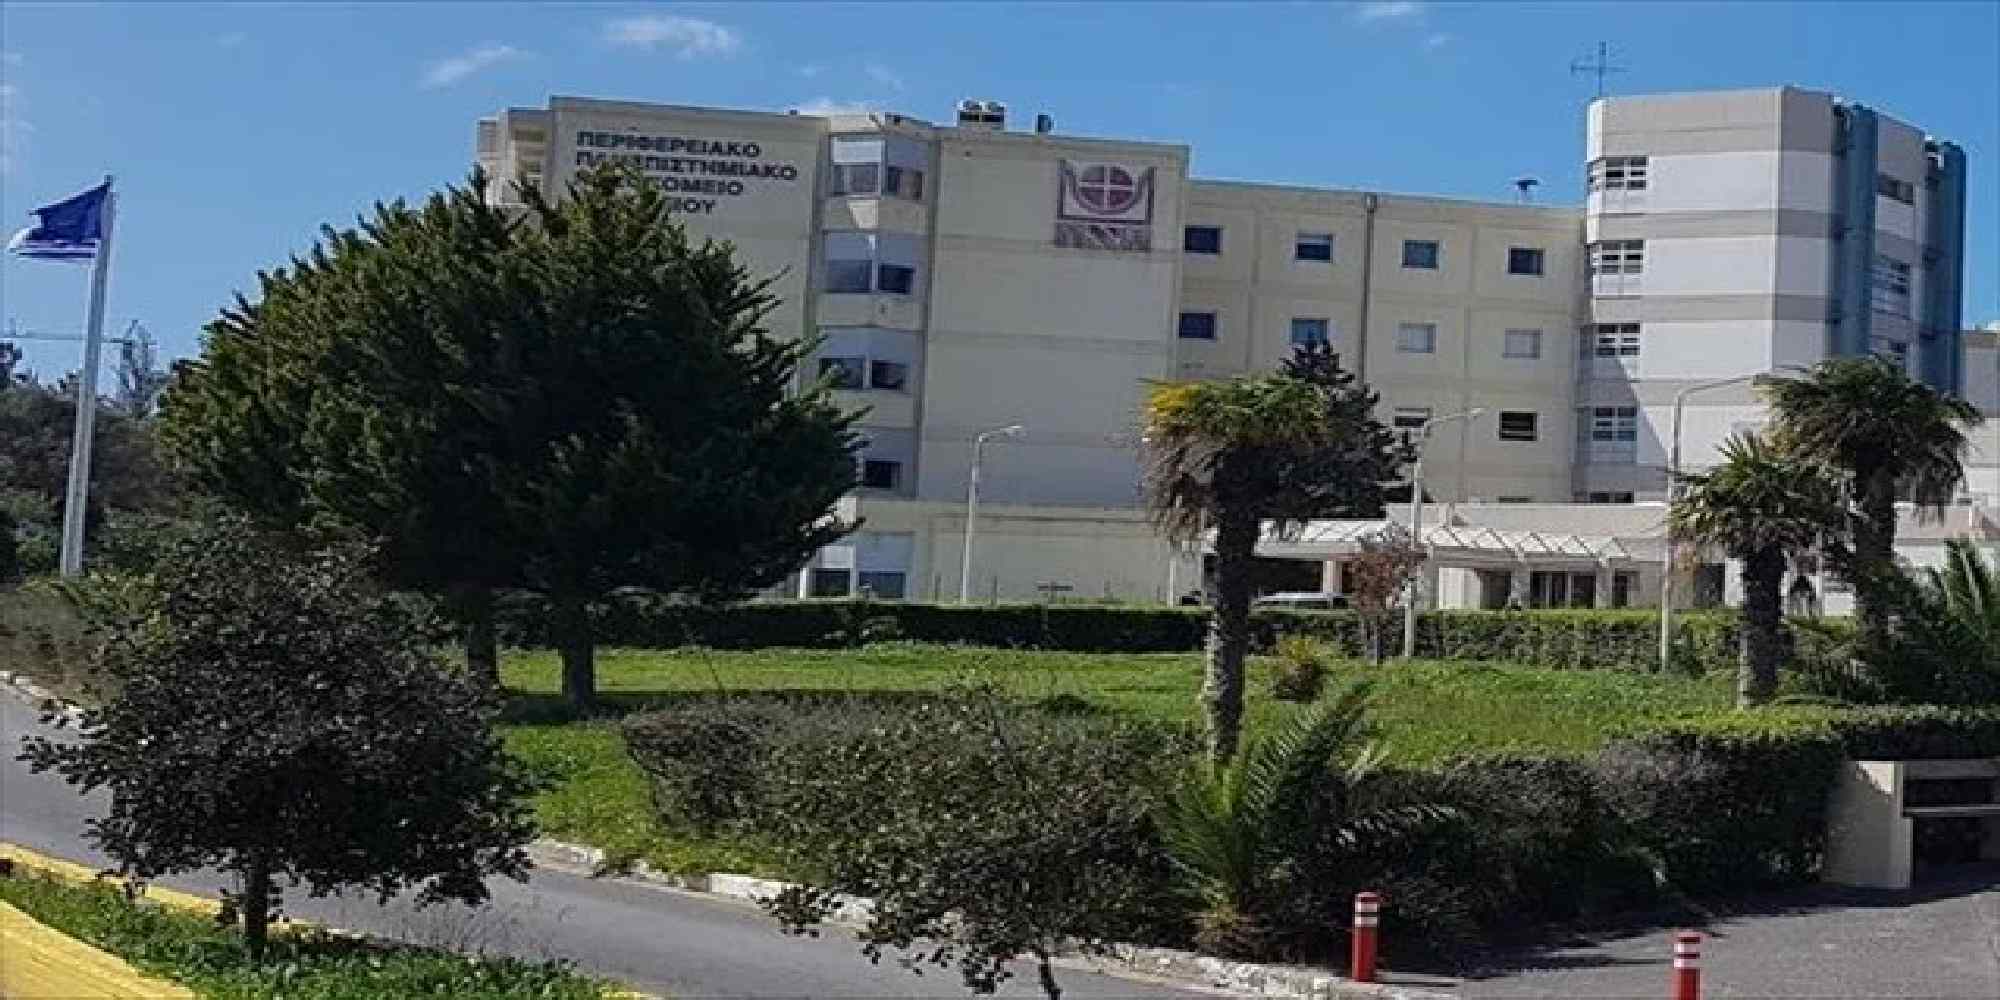 Το περιφερειακό πανεπιστημαικό νοσοκομείο Ηρακλείου (ΠΑΓΝΗ)